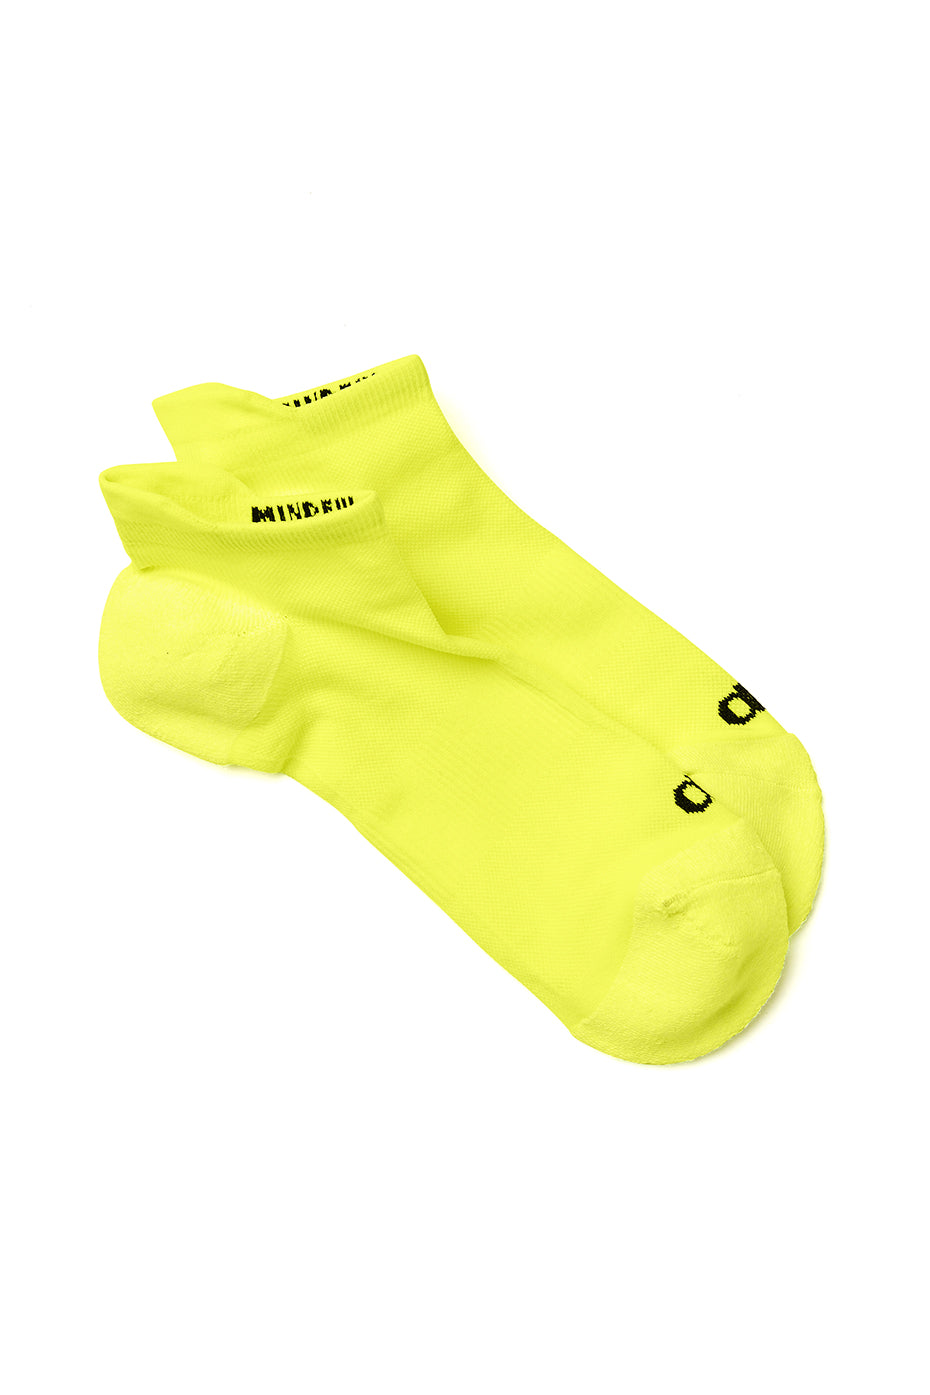 Adult Nylon Neon Yellow Socks.